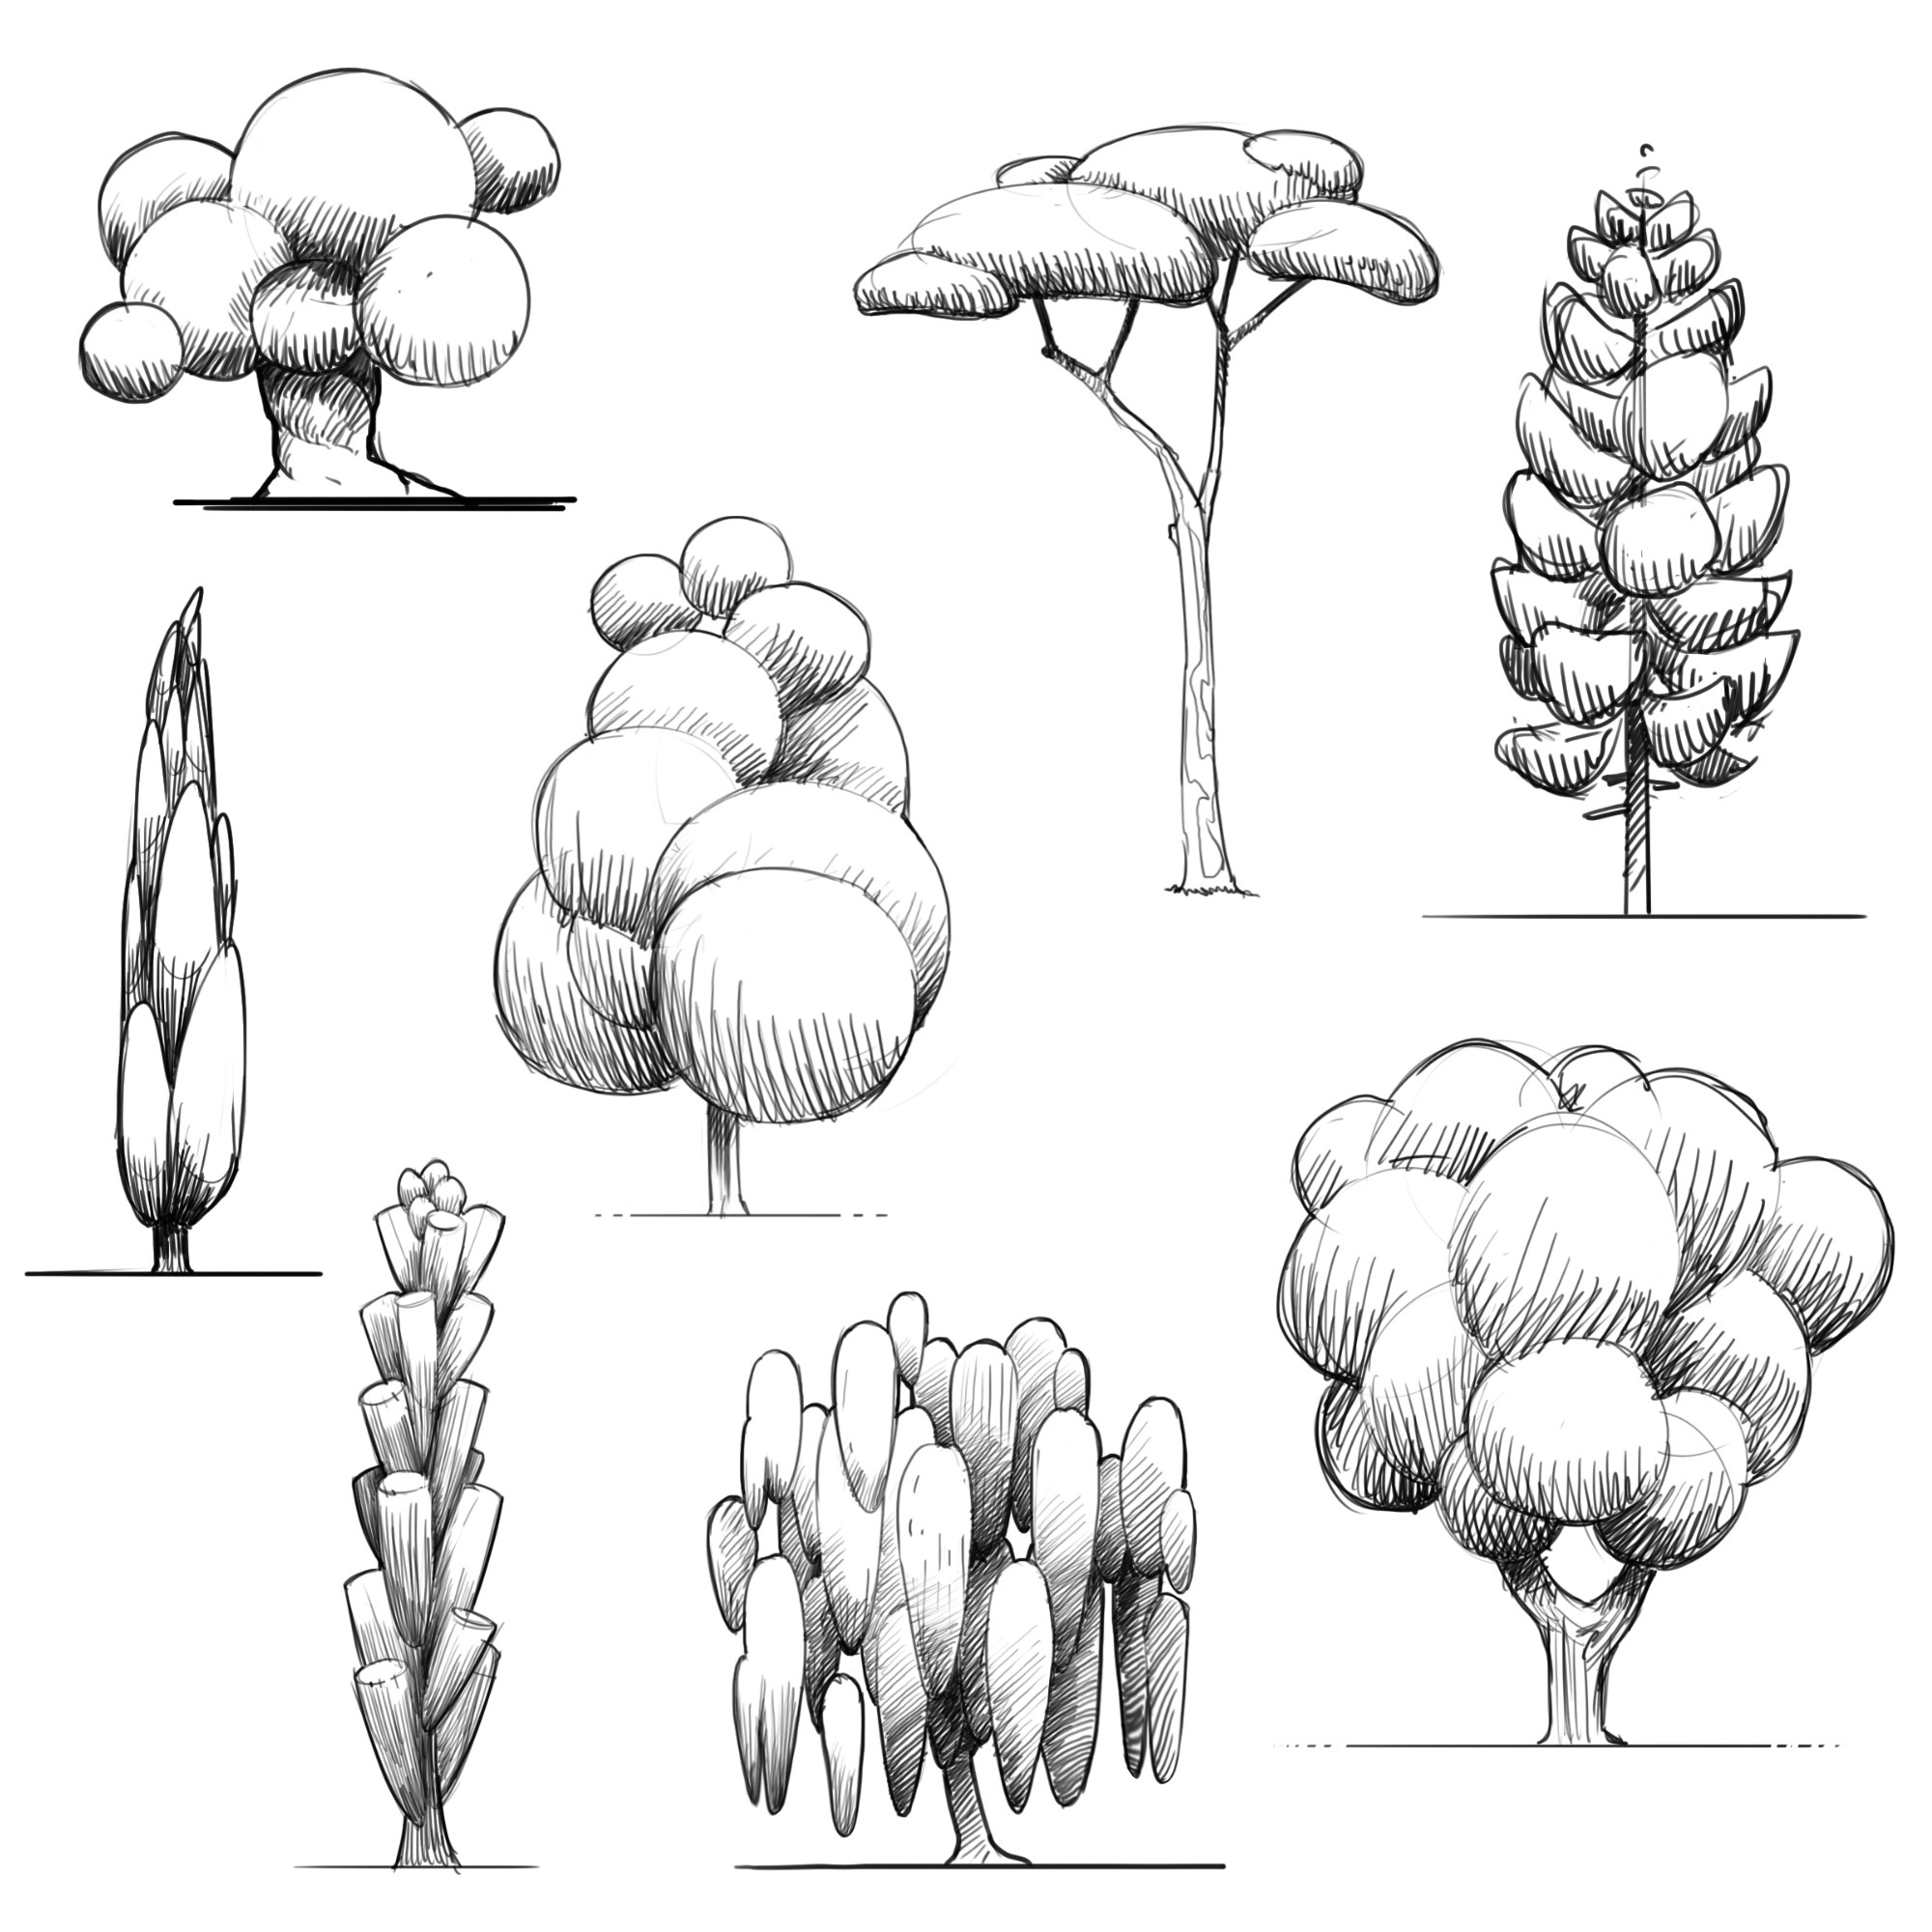 Trees stylization